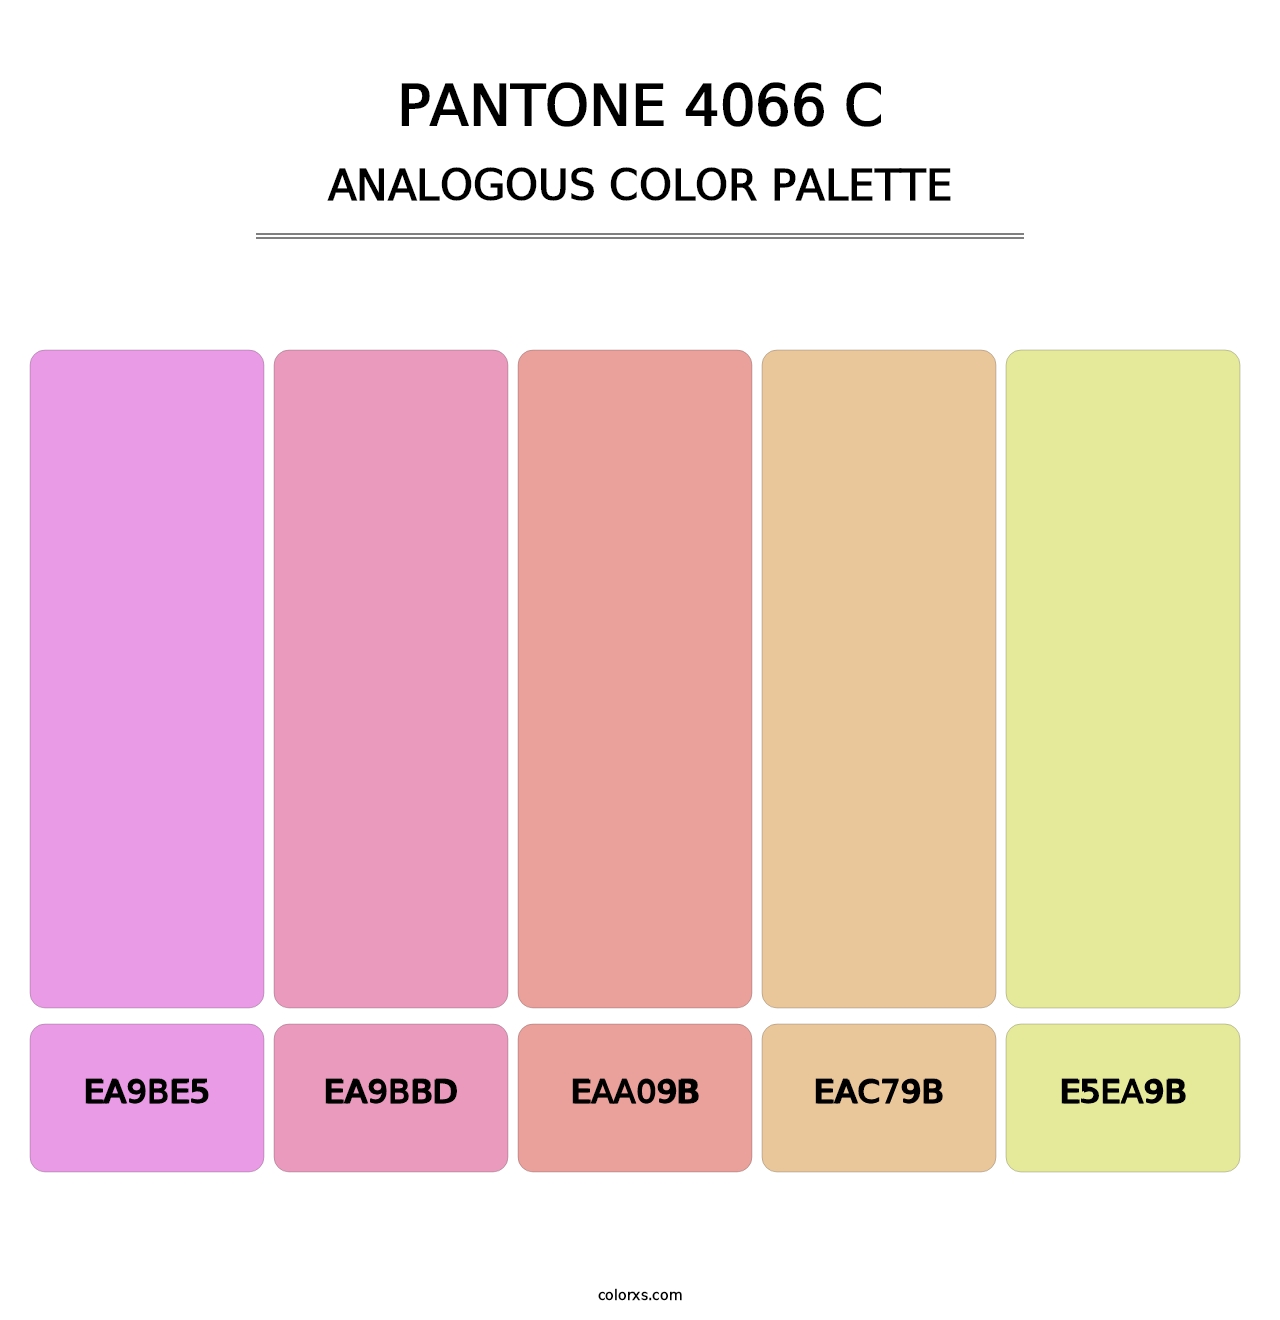 PANTONE 4066 C - Analogous Color Palette